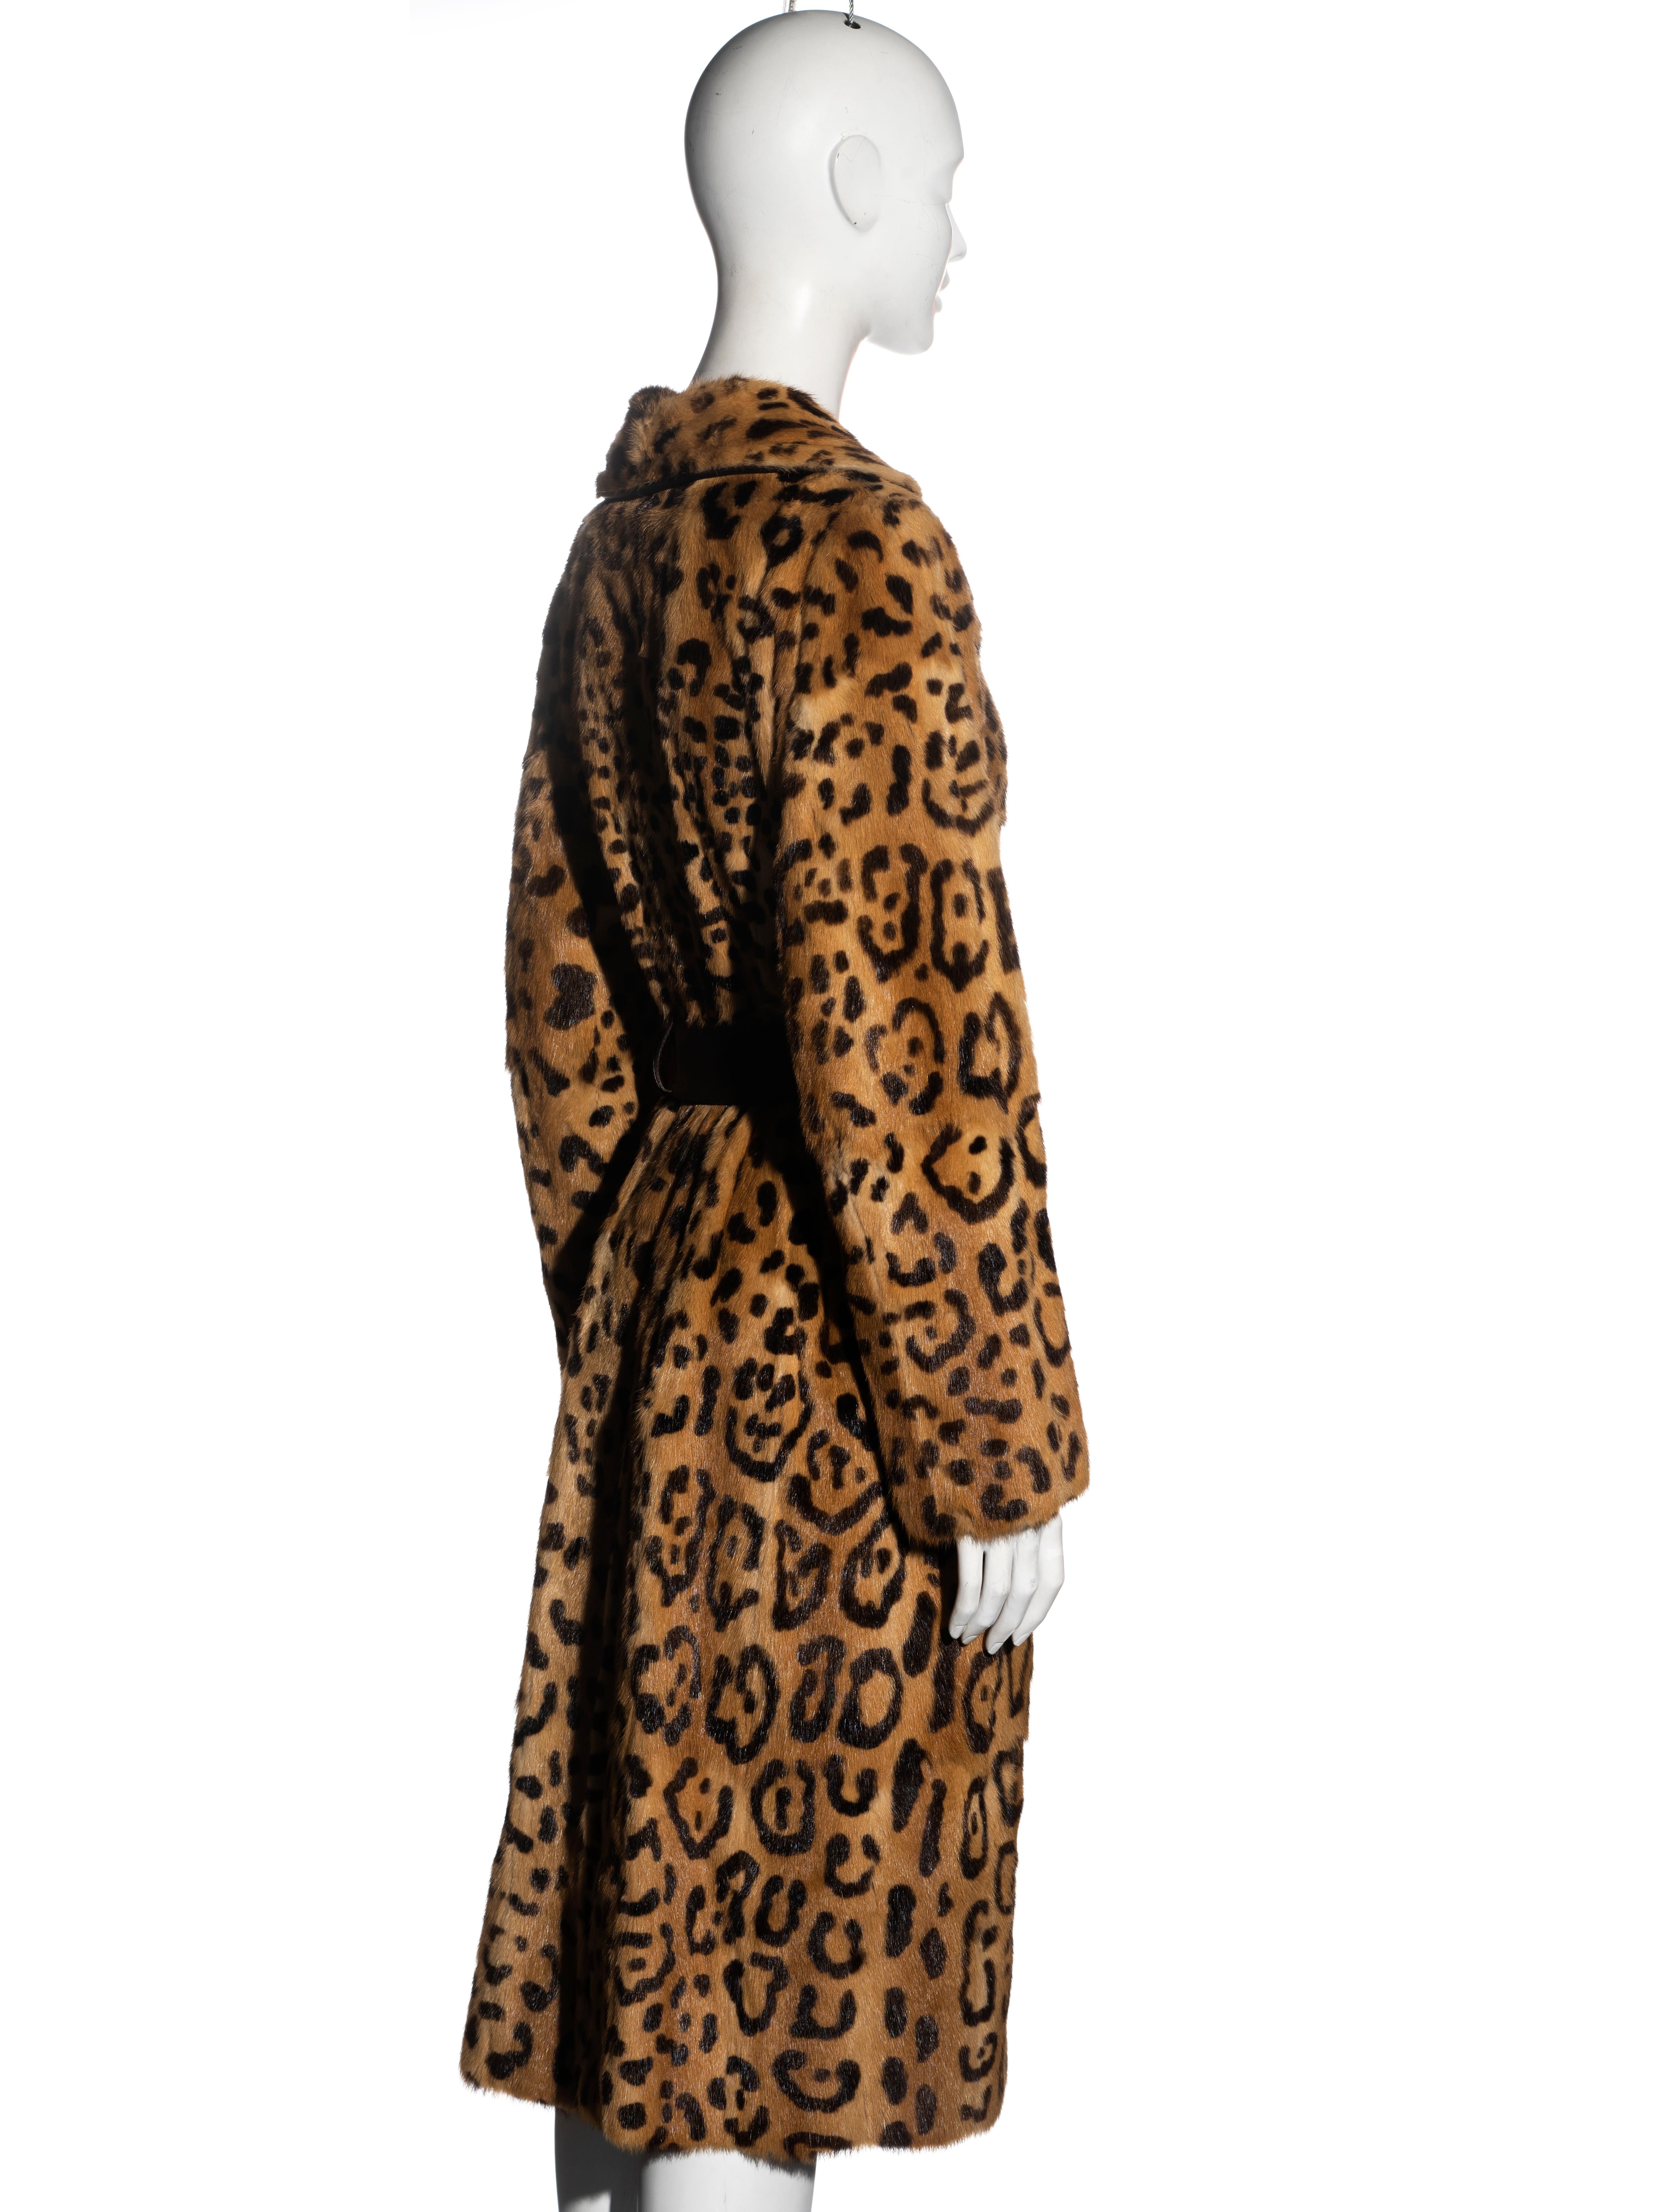 Women's Dolce & Gabbana leopard print rabbit fur coat, fw 2000